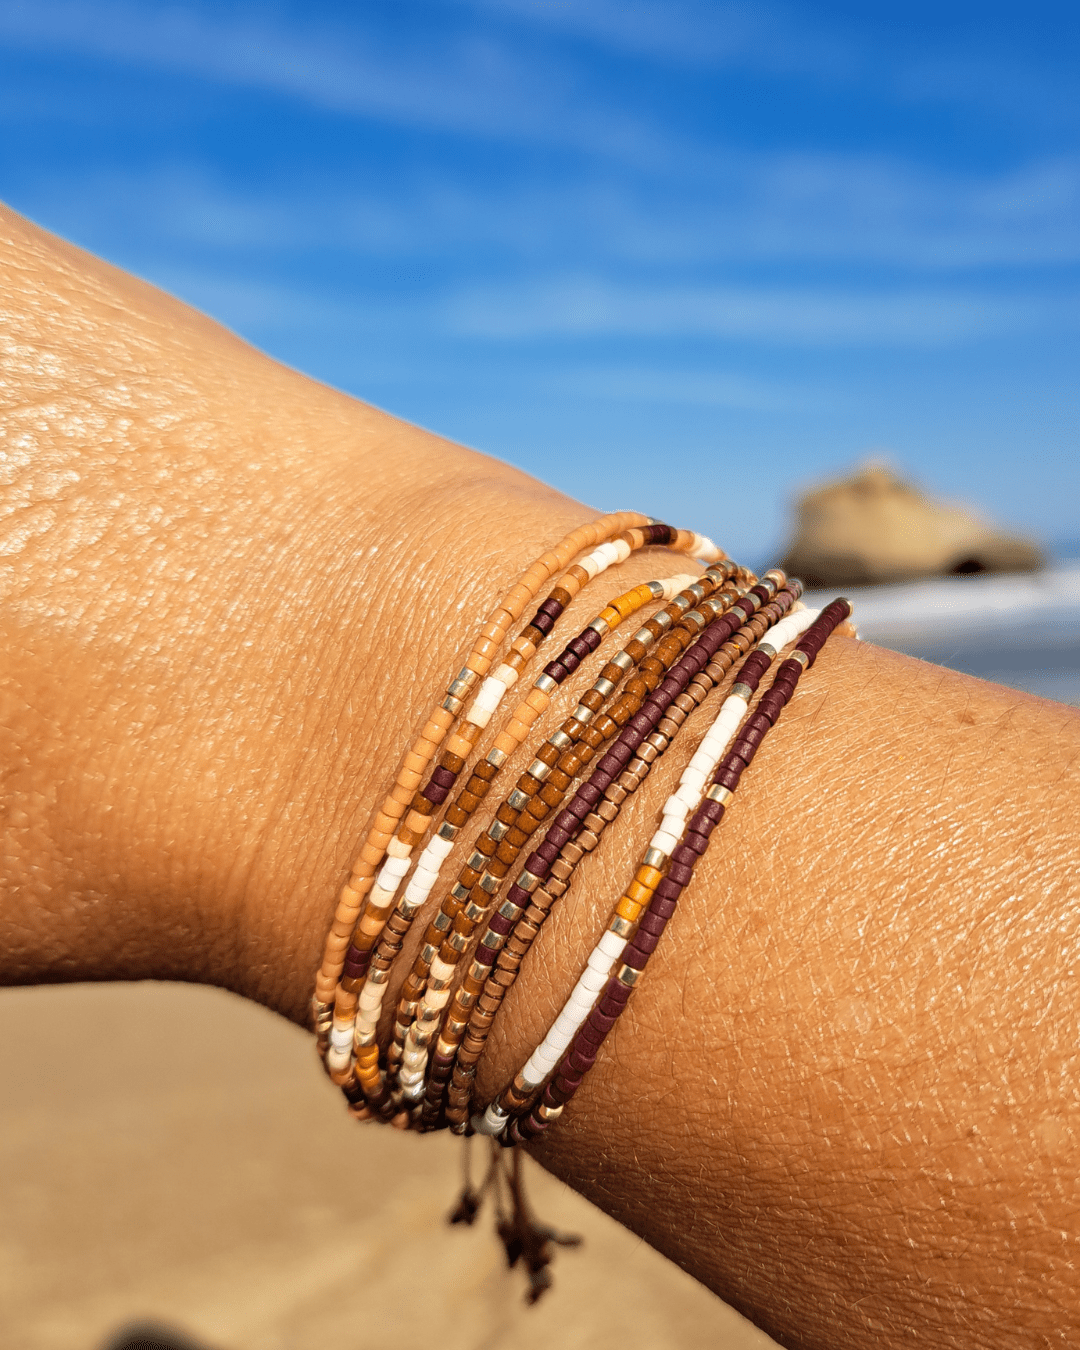 Oyartza Hontza présente le bracelet multi-rangs Iva avec 9 rangs de 101 perles Miyuki. Exprimez votre style avec ce bijou adaptable à tous les poignets grâce à sa fermeture coulissante. Découvrez les bienfaits de la couleur au quotidien pour un bien-être constant.